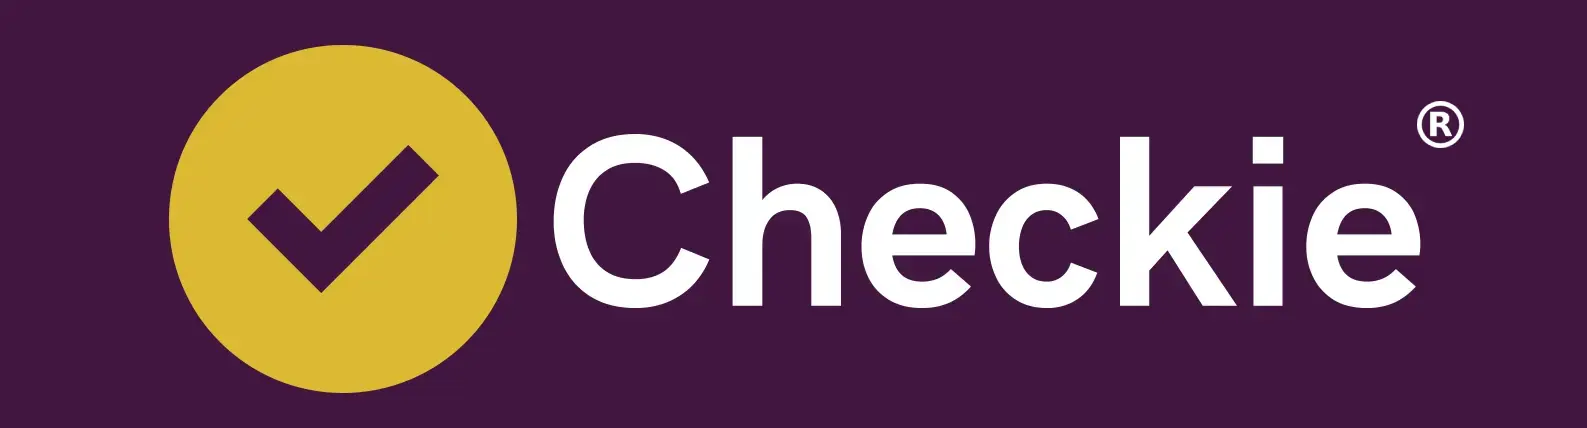 Checkie Navigation Logo